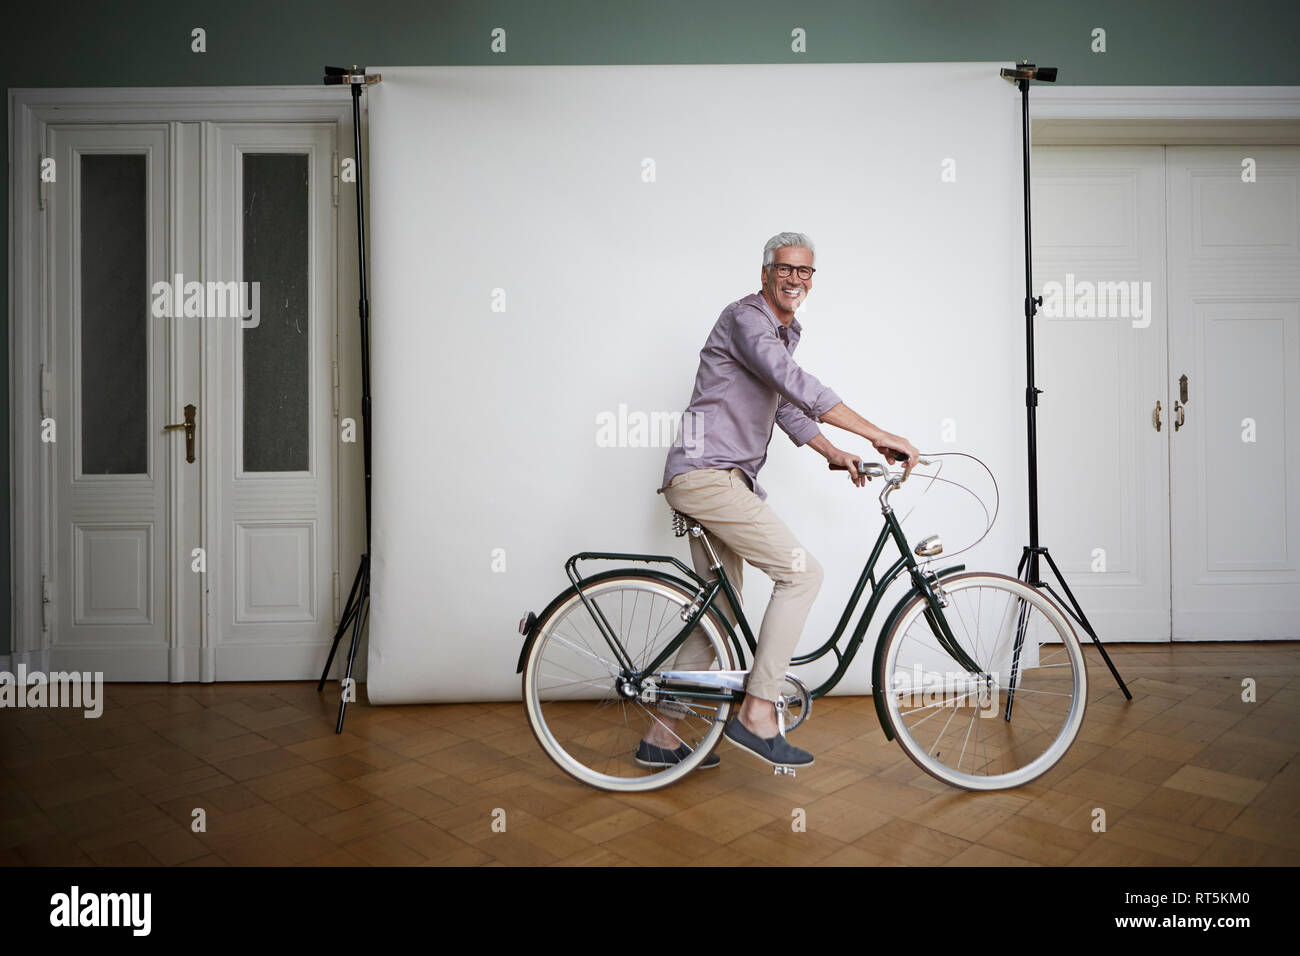 Portrait von reifer Mann auf dem Fahrrad auf Leinwand posing Stockfoto